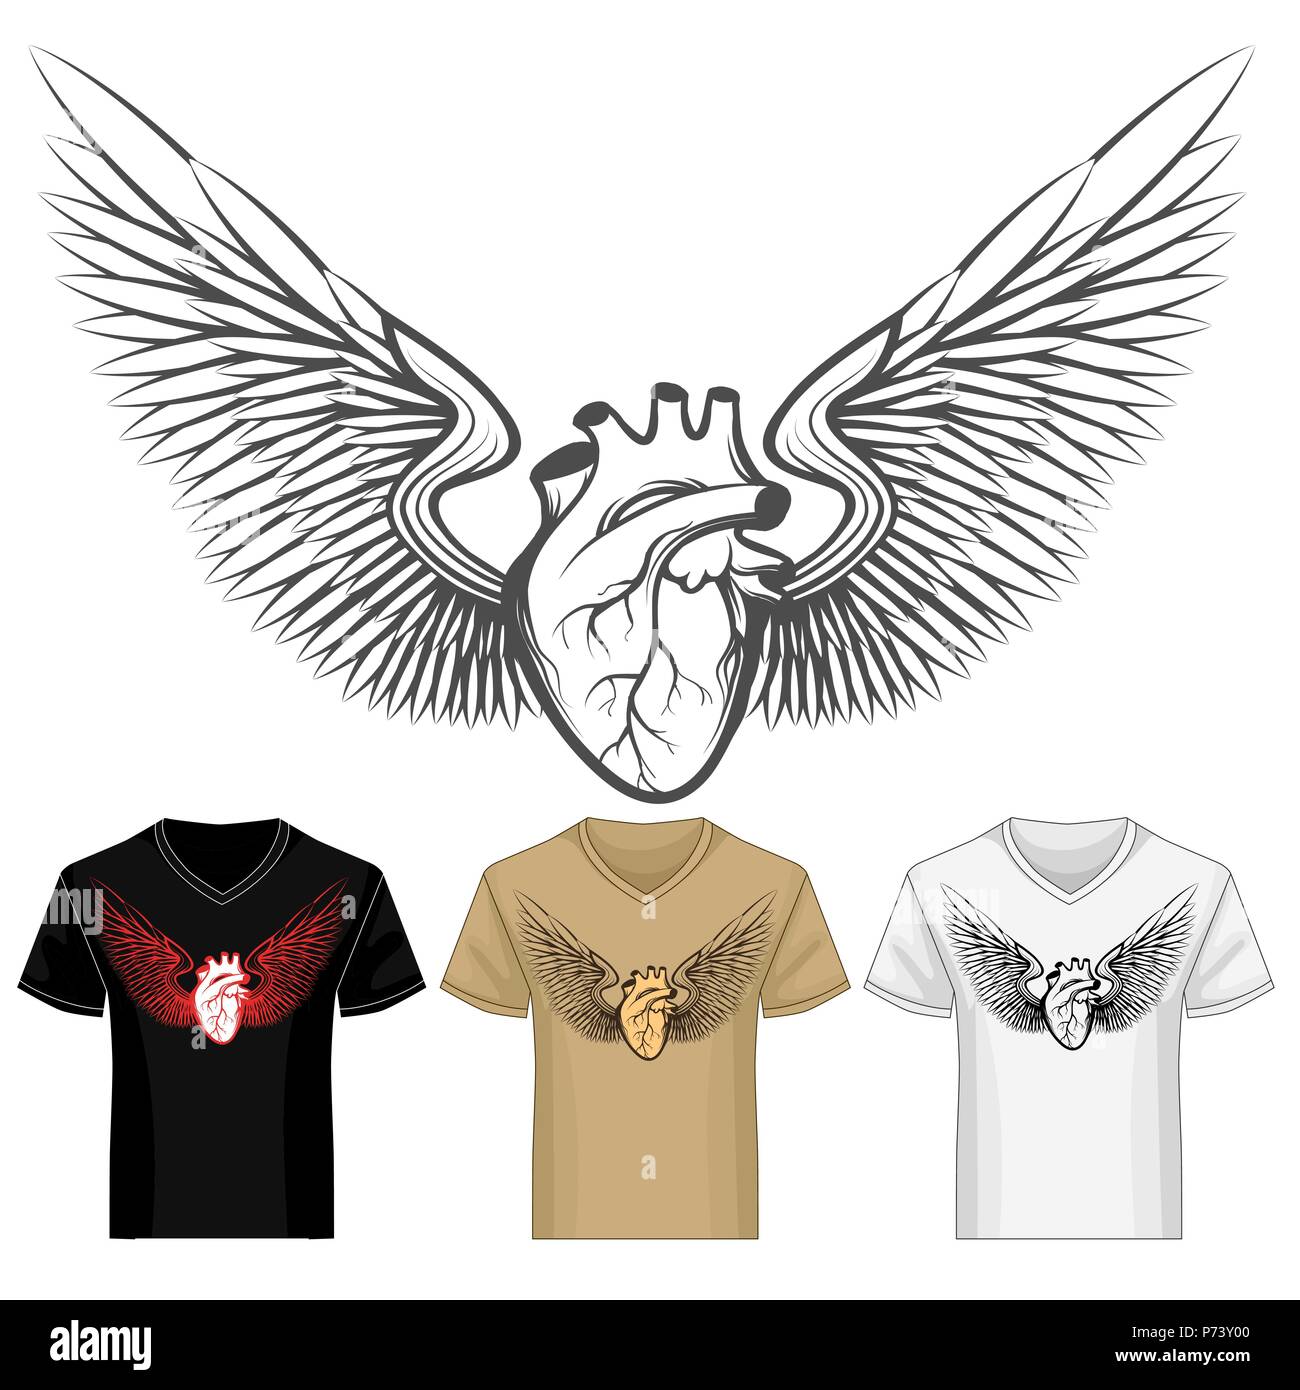 Herz mit Flügeln shirt Druckvorlage in verschiedenen Farbvarianten. Vector Illustration. Stock Vektor